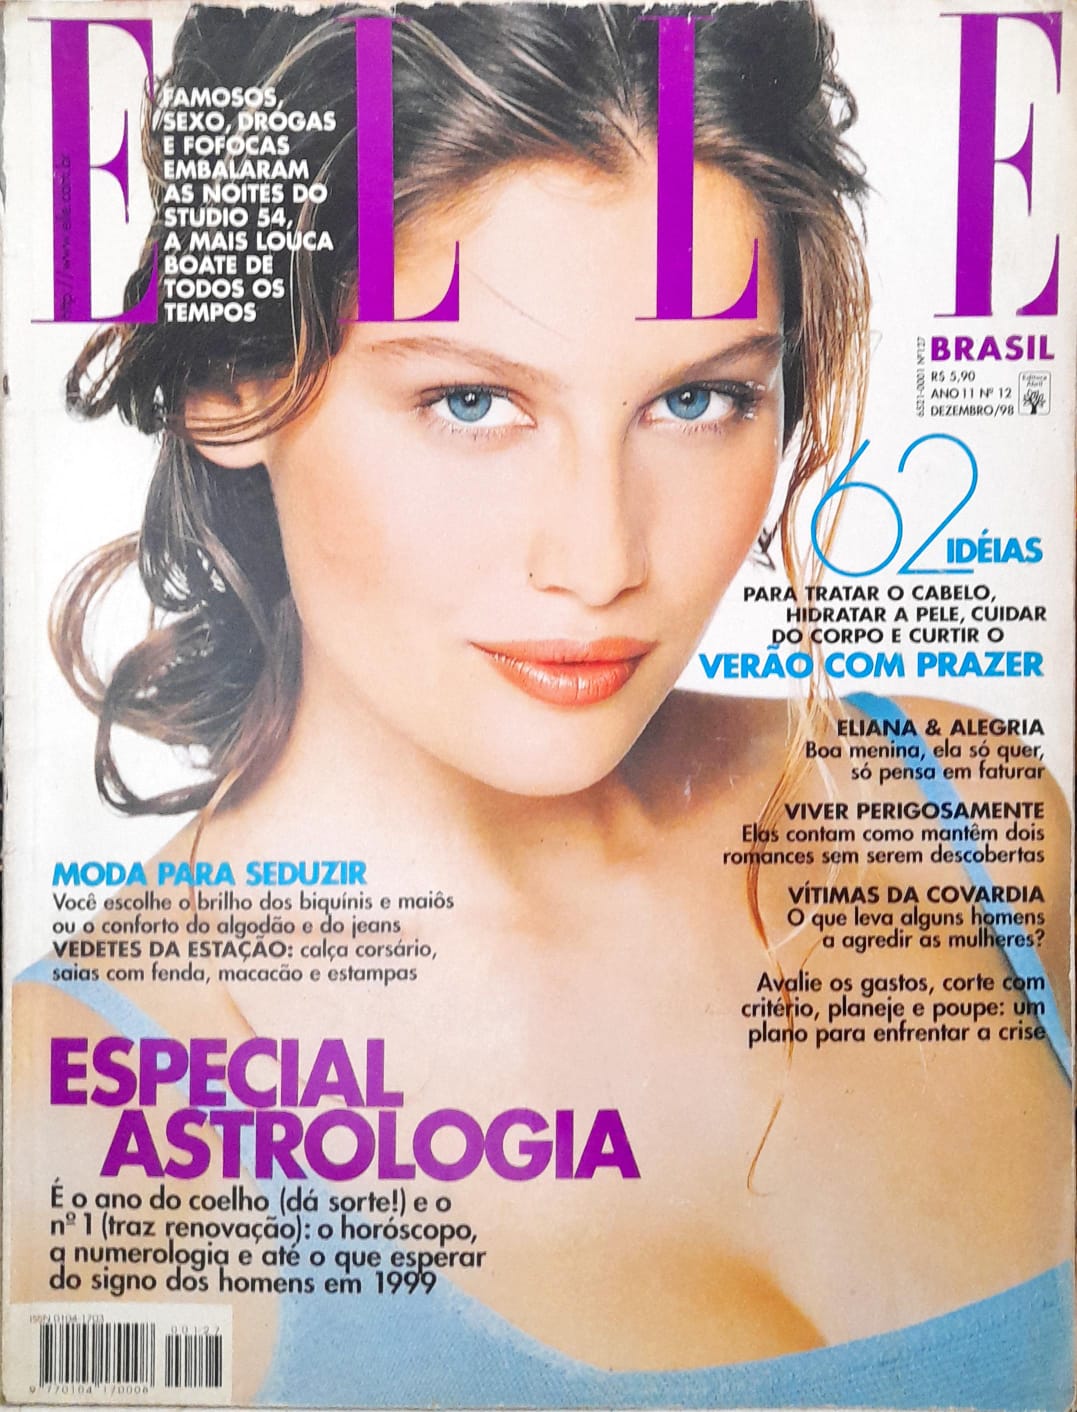 Elle: Breve história das revistas e magazines